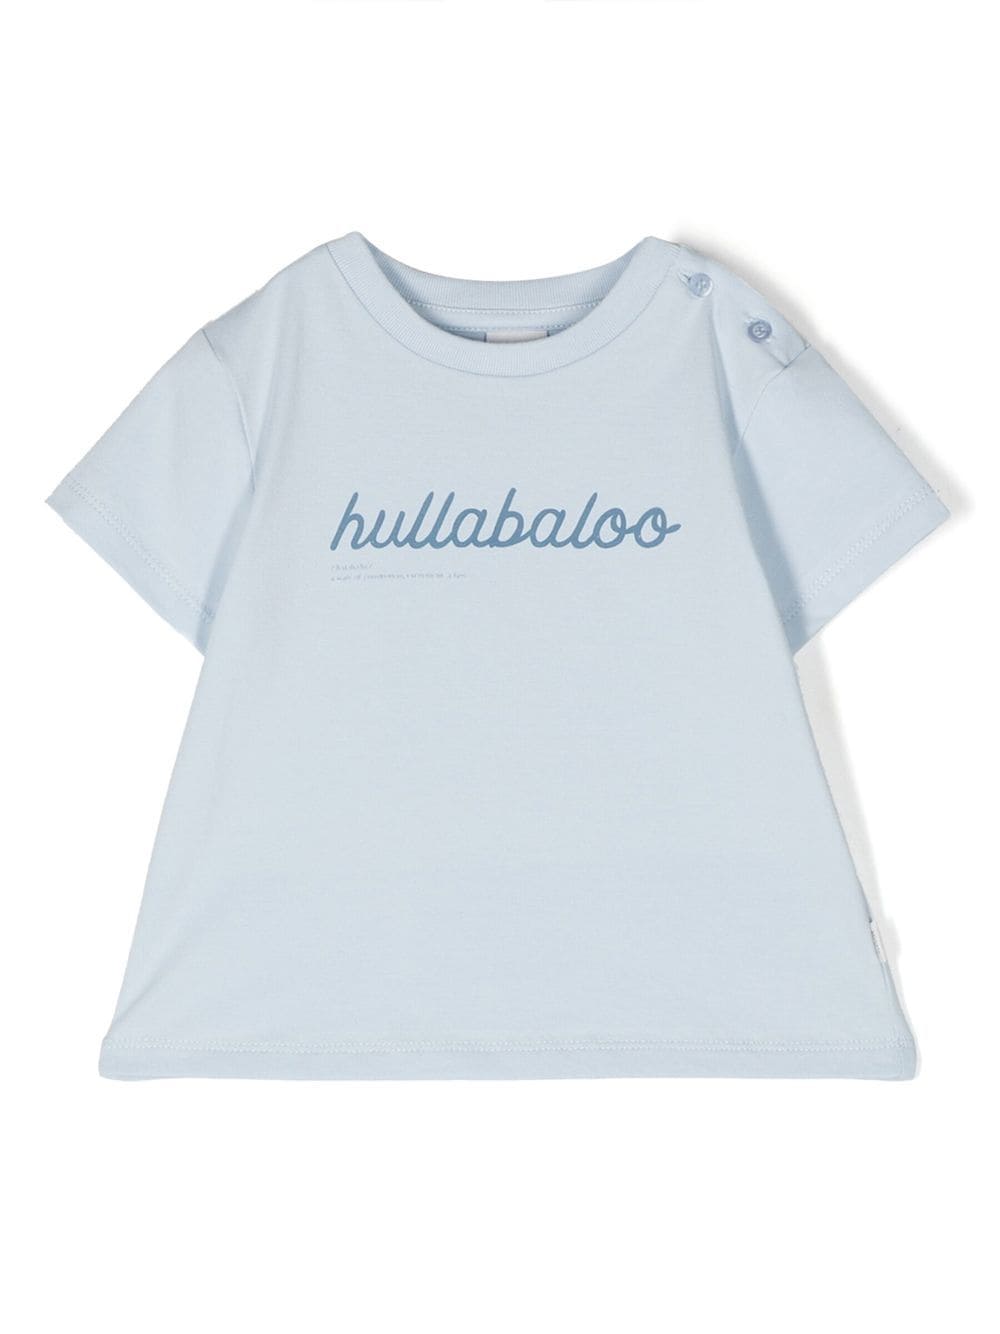 Knot Hullabaloo button detailed T-shirt - Blue von Knot